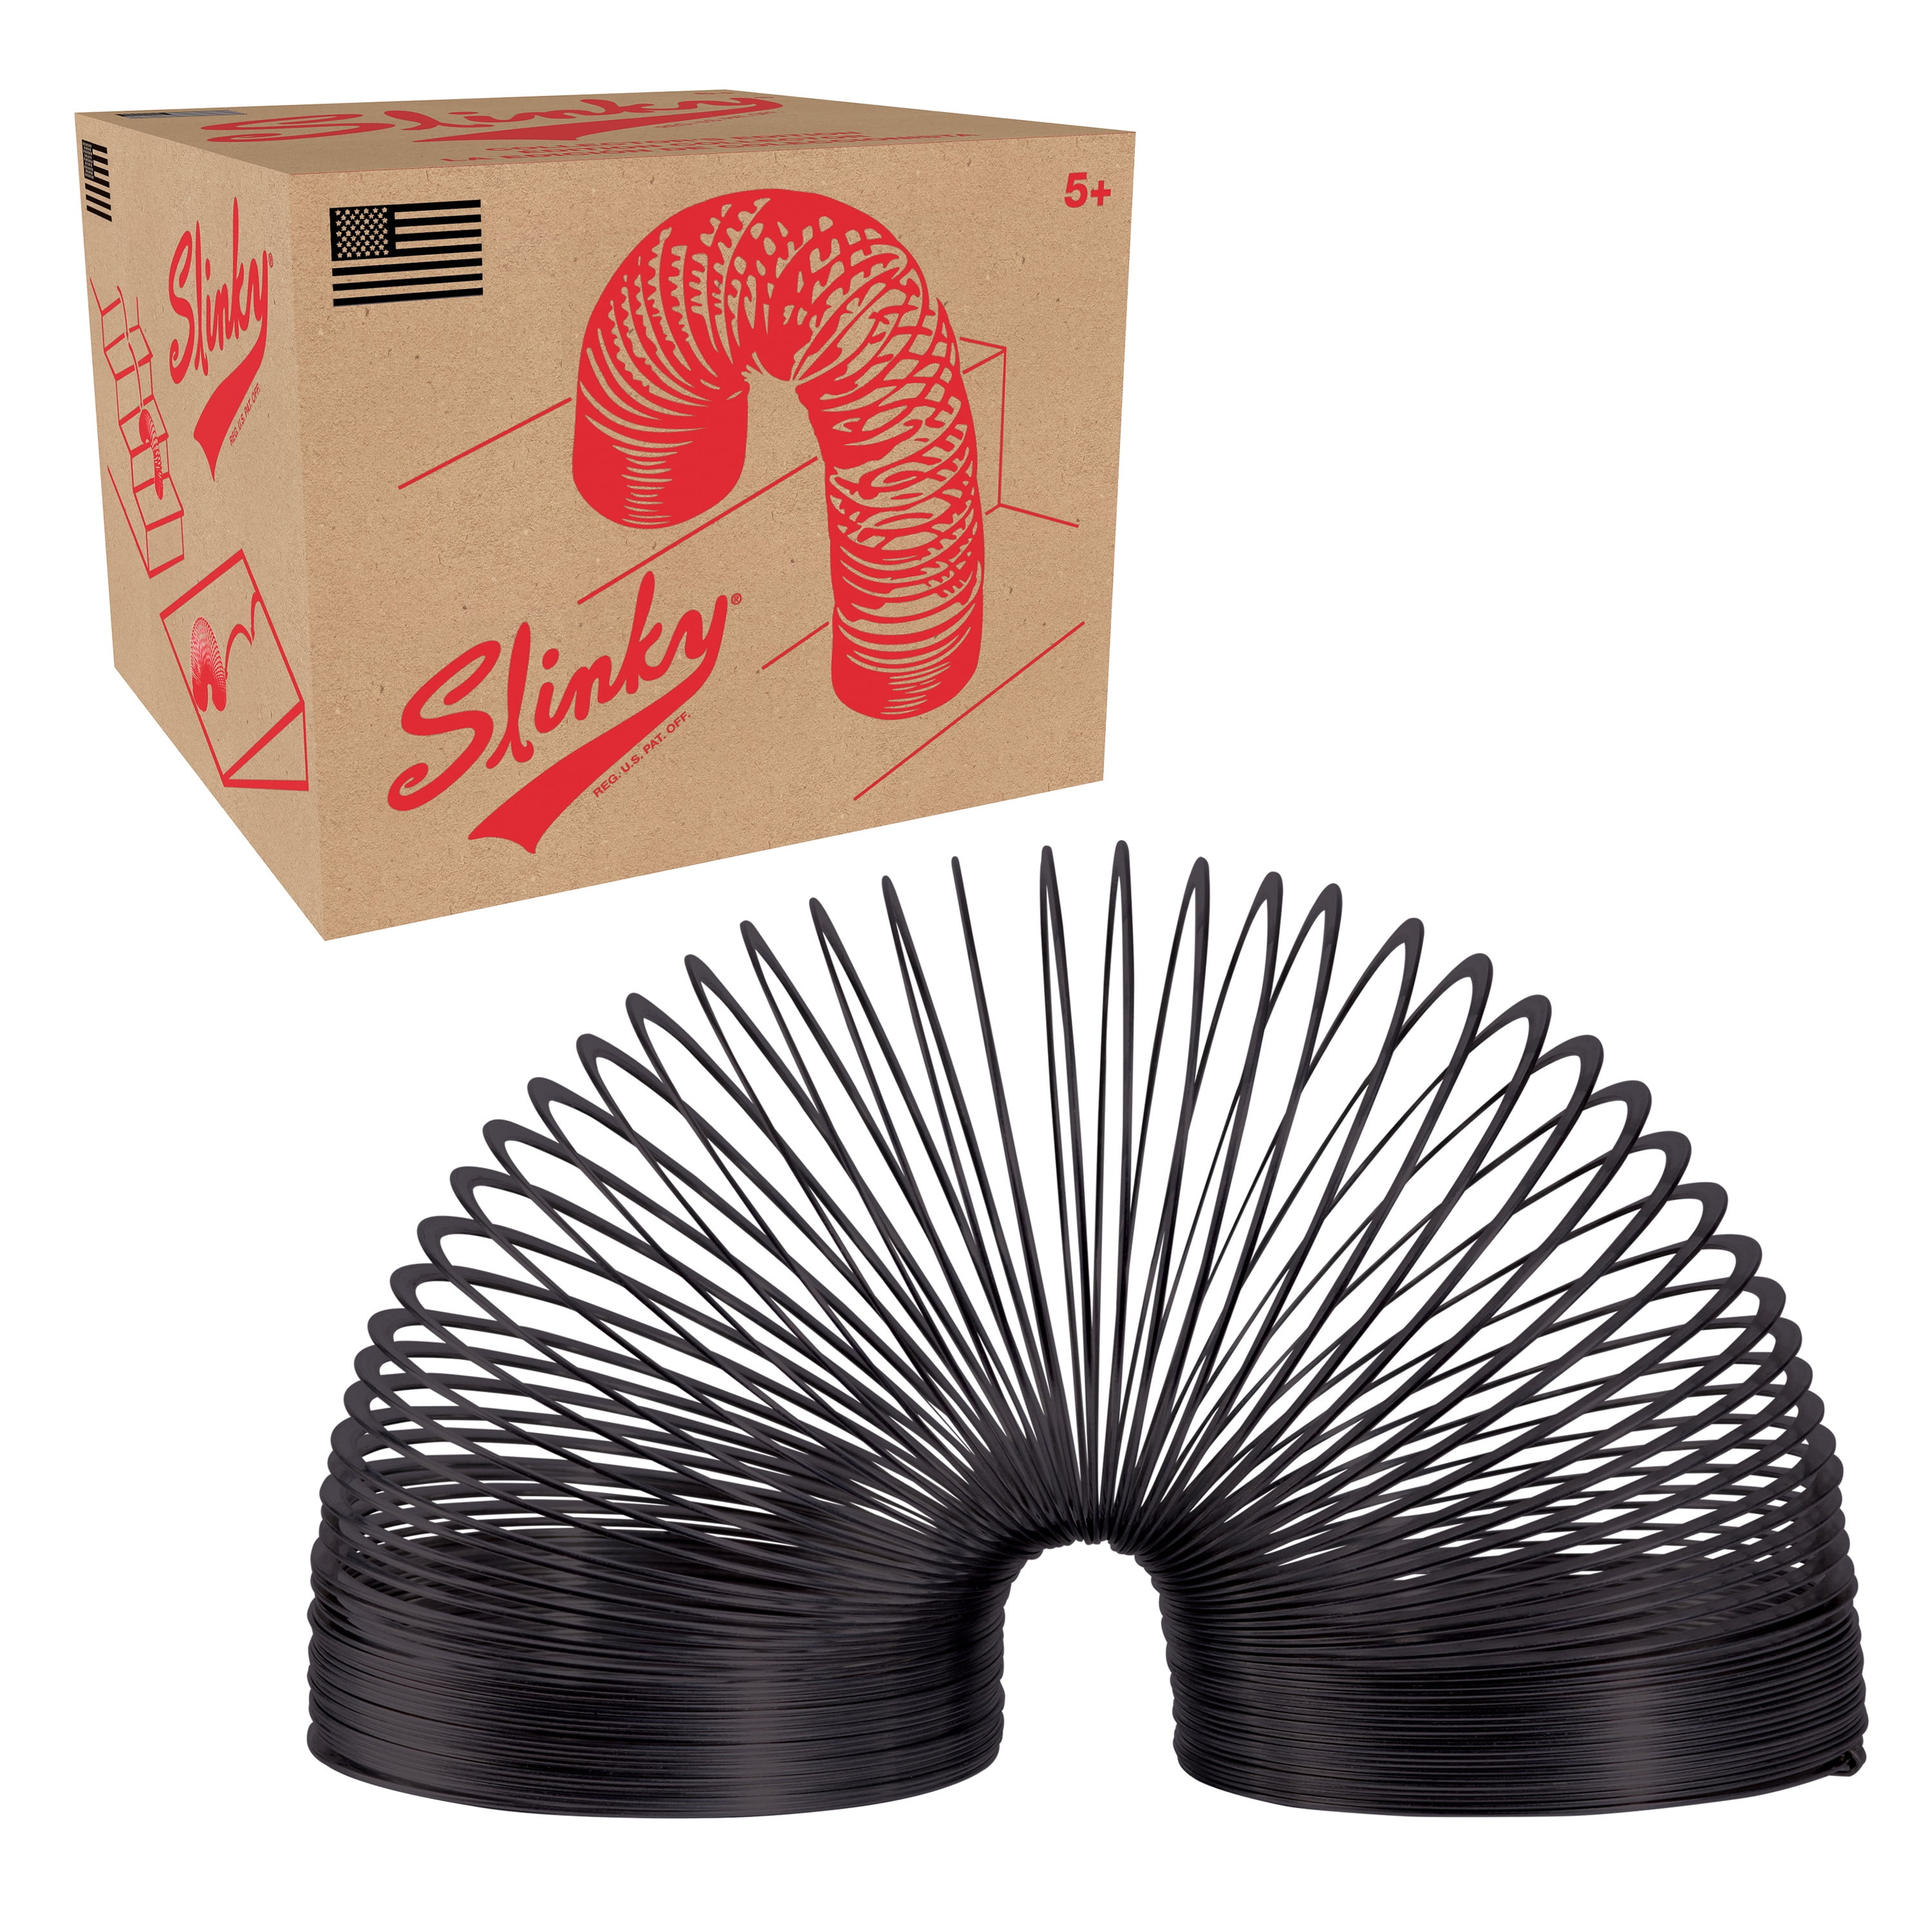 The Original Slinky Brand Metal Slinky 